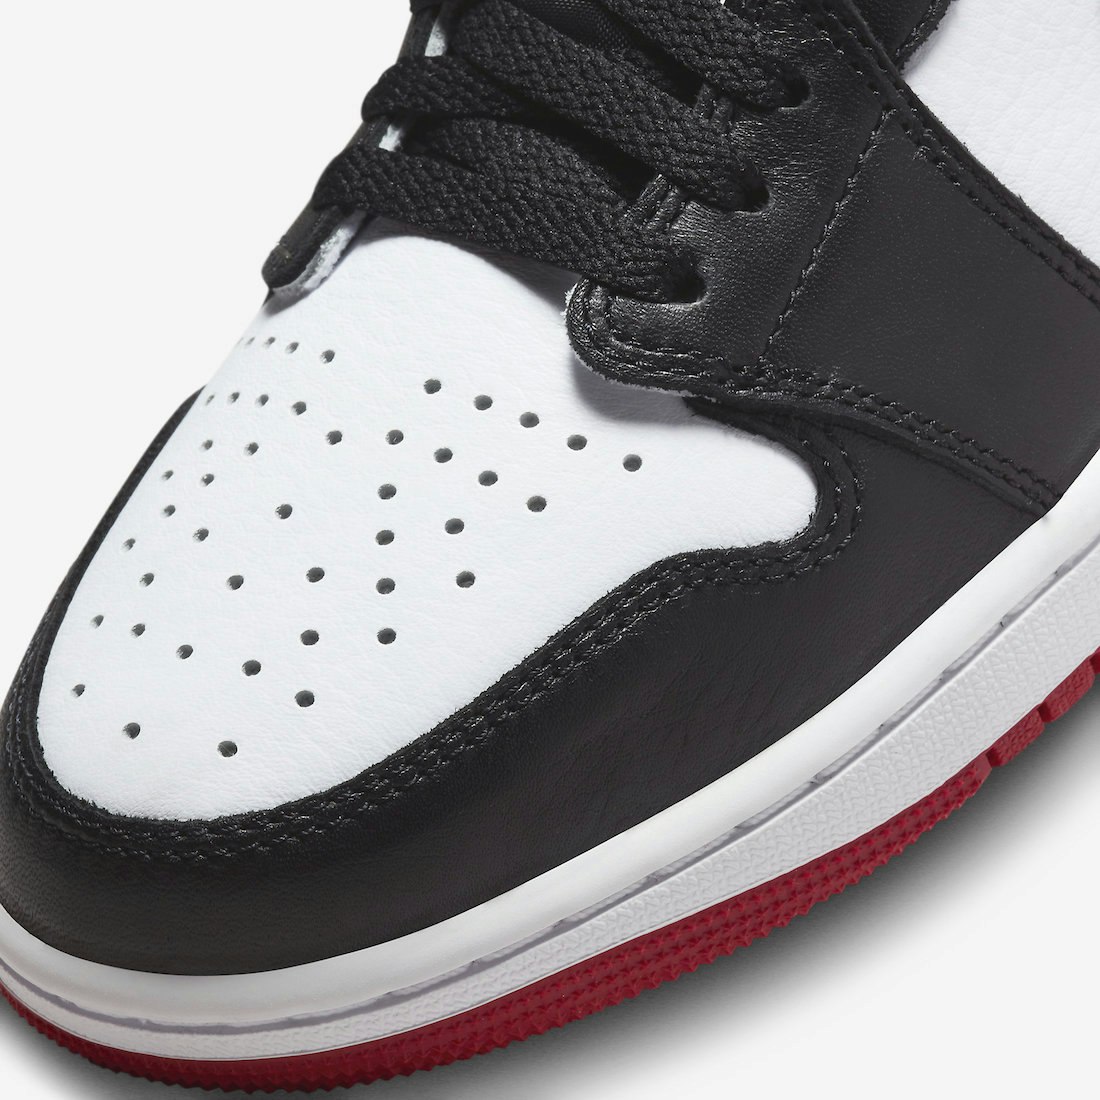 Air Jordan 1 Low OG "Black Toe"